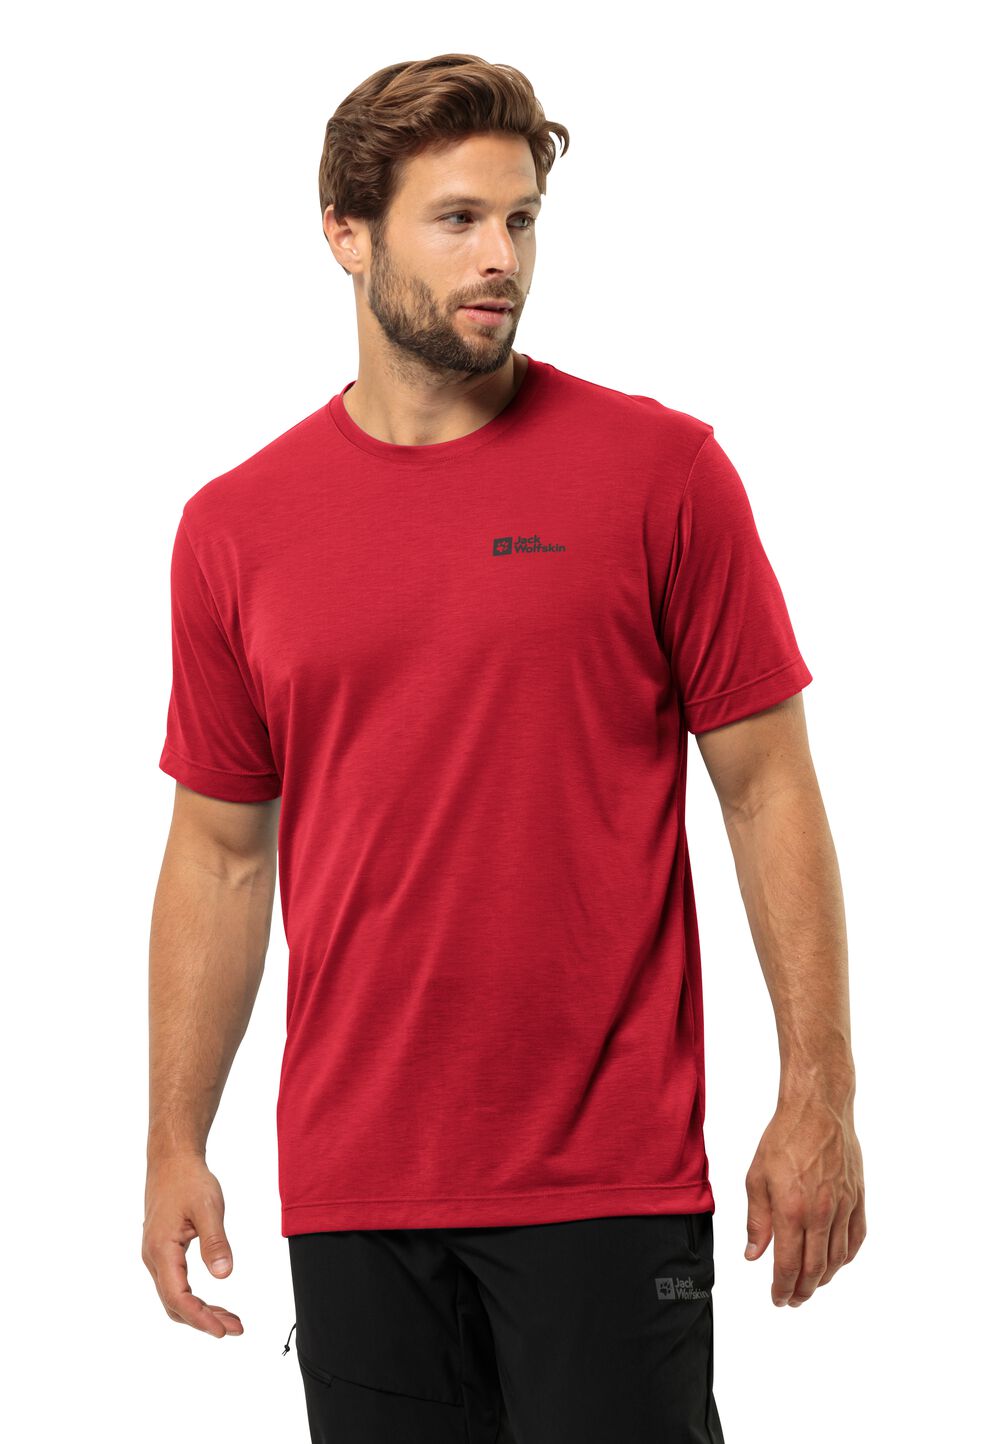 Jack Wolfskin Vonnan S S T-Shirt Men Functioneel shirt Heren L rood red glow